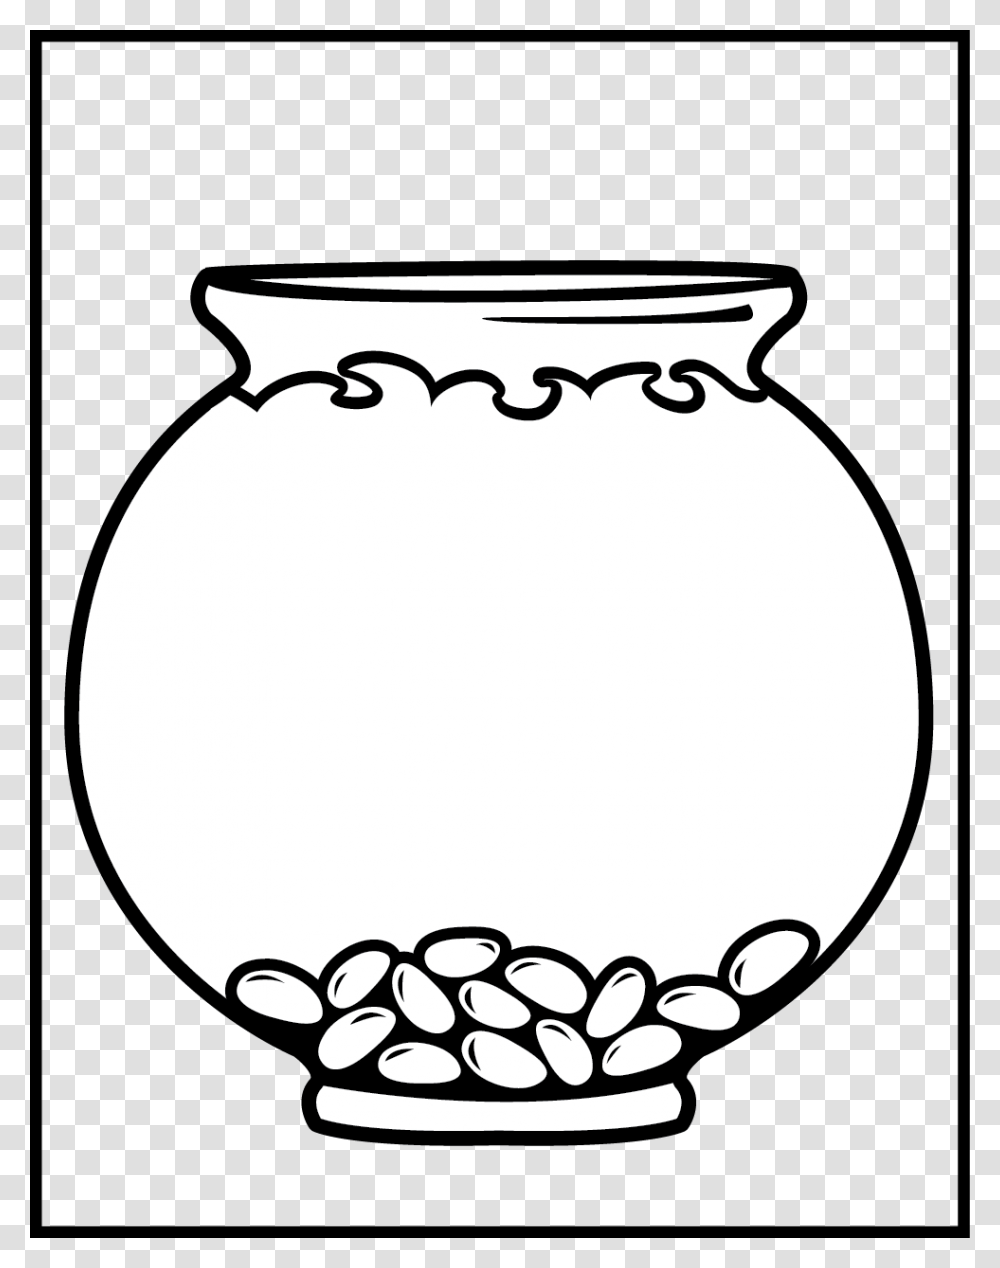 Dog Bowl Clip Art, Jar, Vase, Pottery, Urn Transparent Png